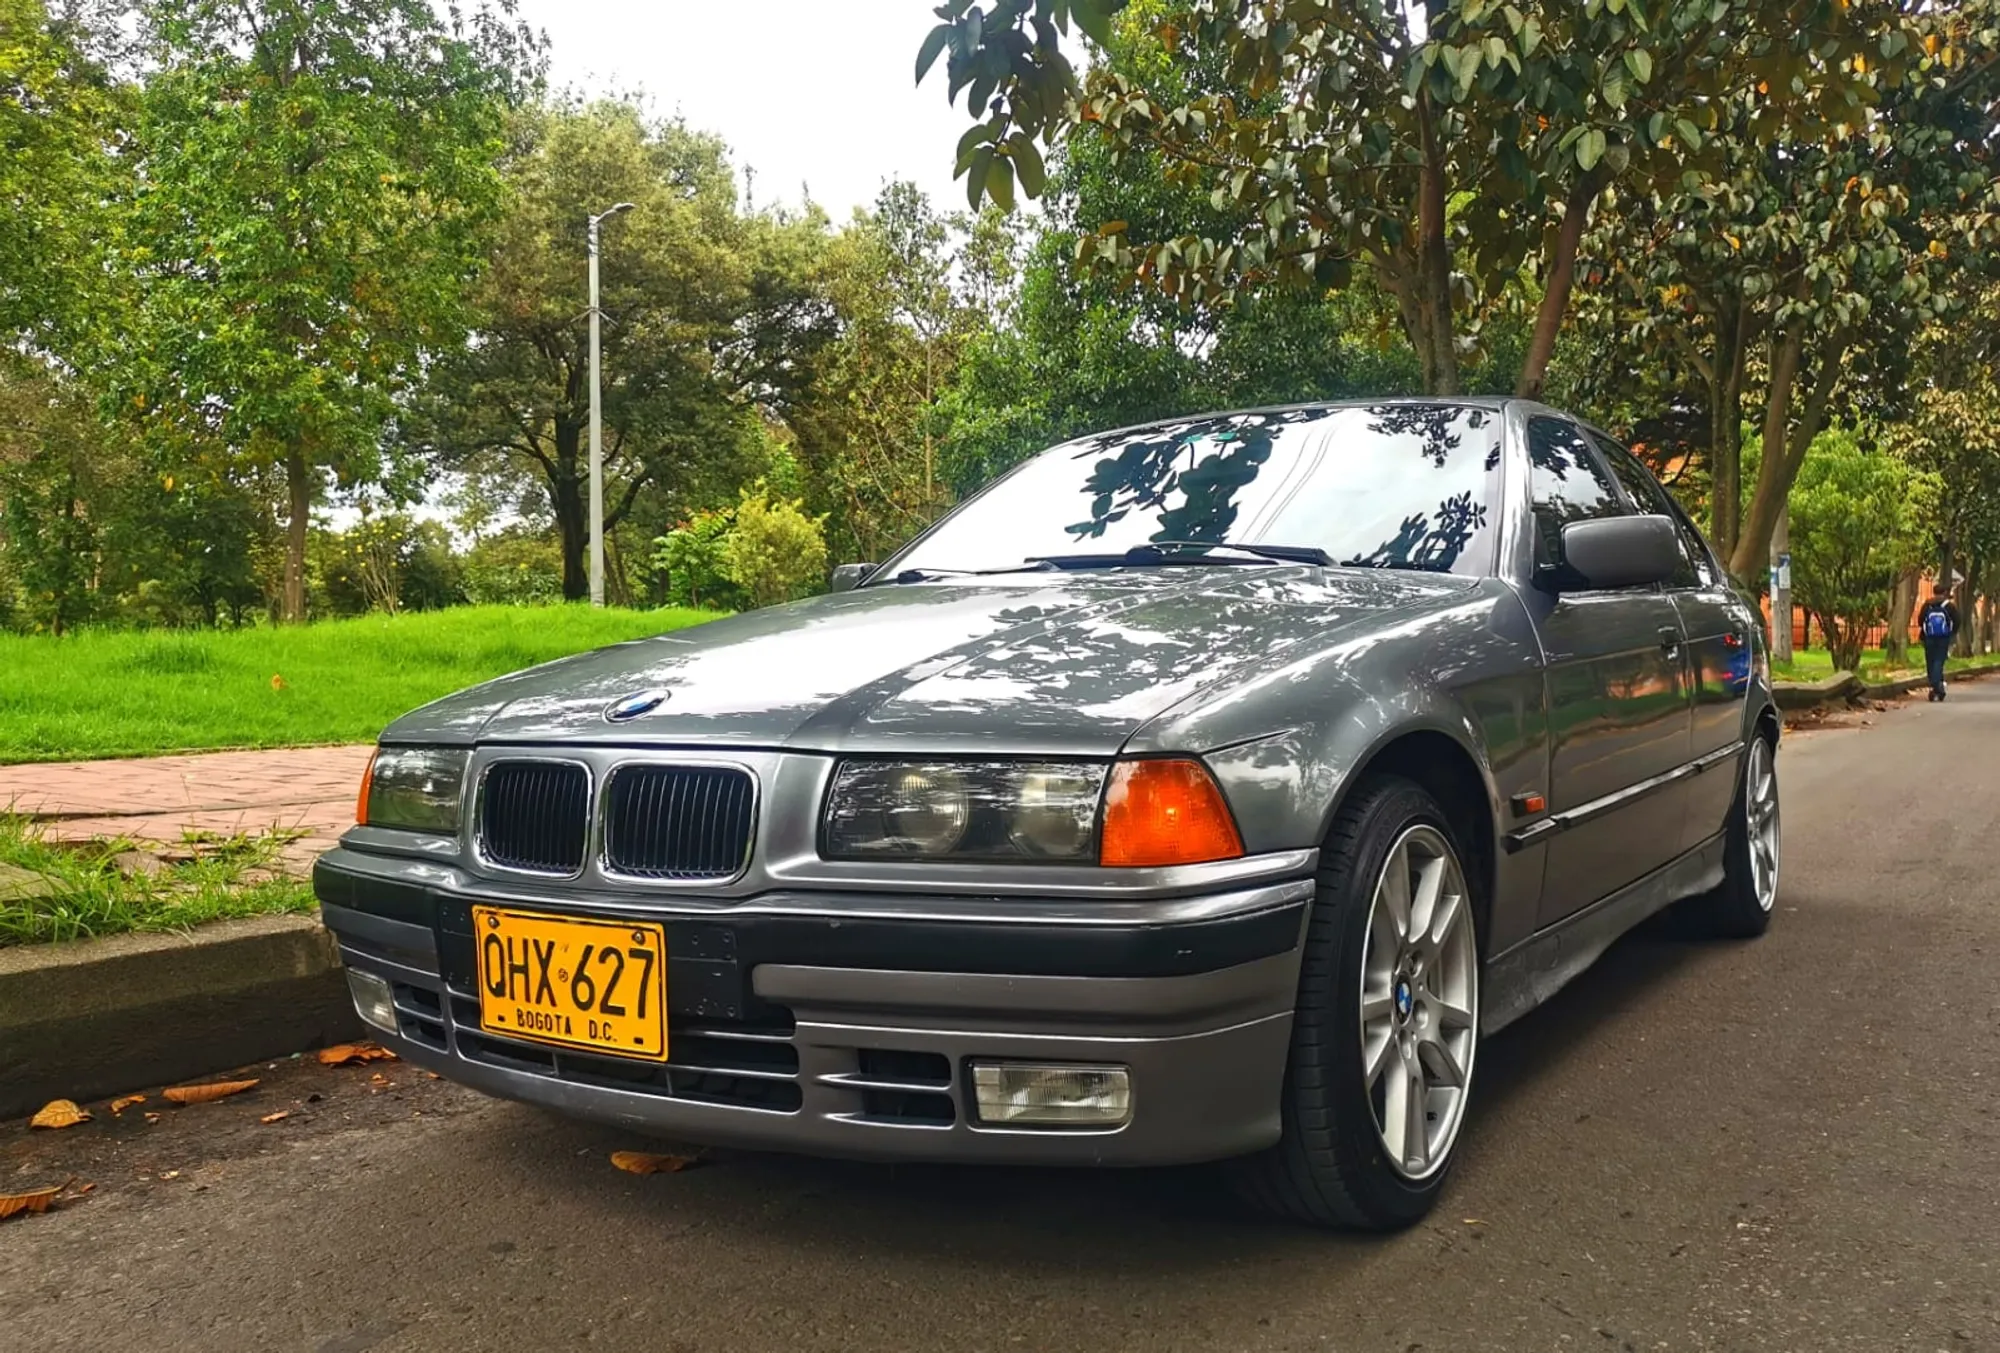 BMW 318i 1996 Oportunidad Excelente Estado